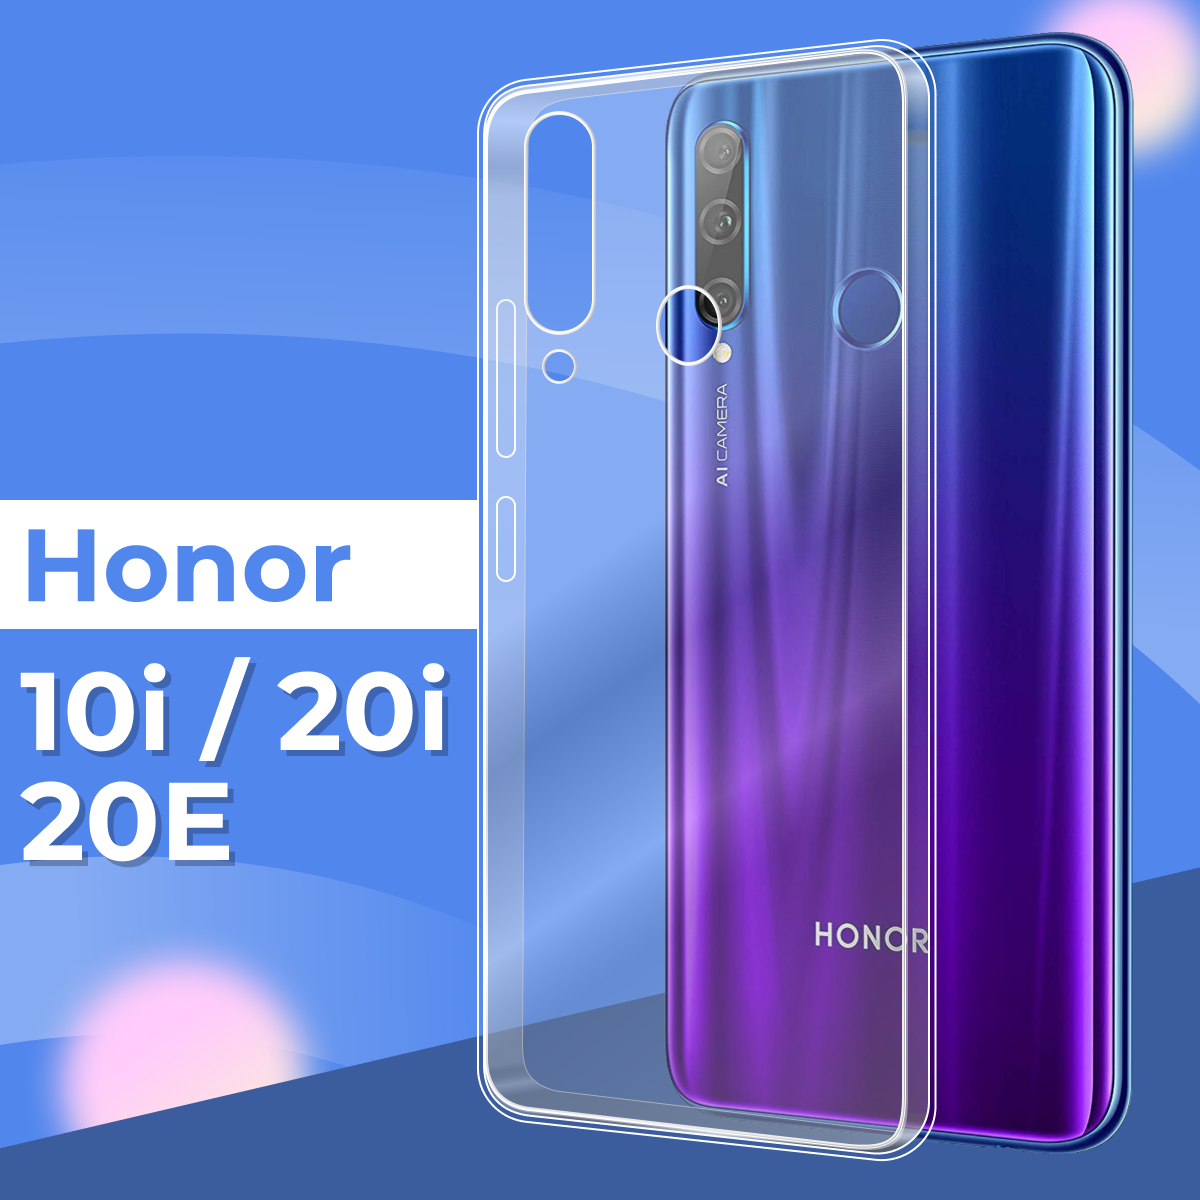 Ультратонкий силиконовый чехол для телефона Honor 10i, Honor 20e и Honor 20i / Прозрачный защитный чехол для Хонор 10, Хонор 20е и Хонор 20 ай